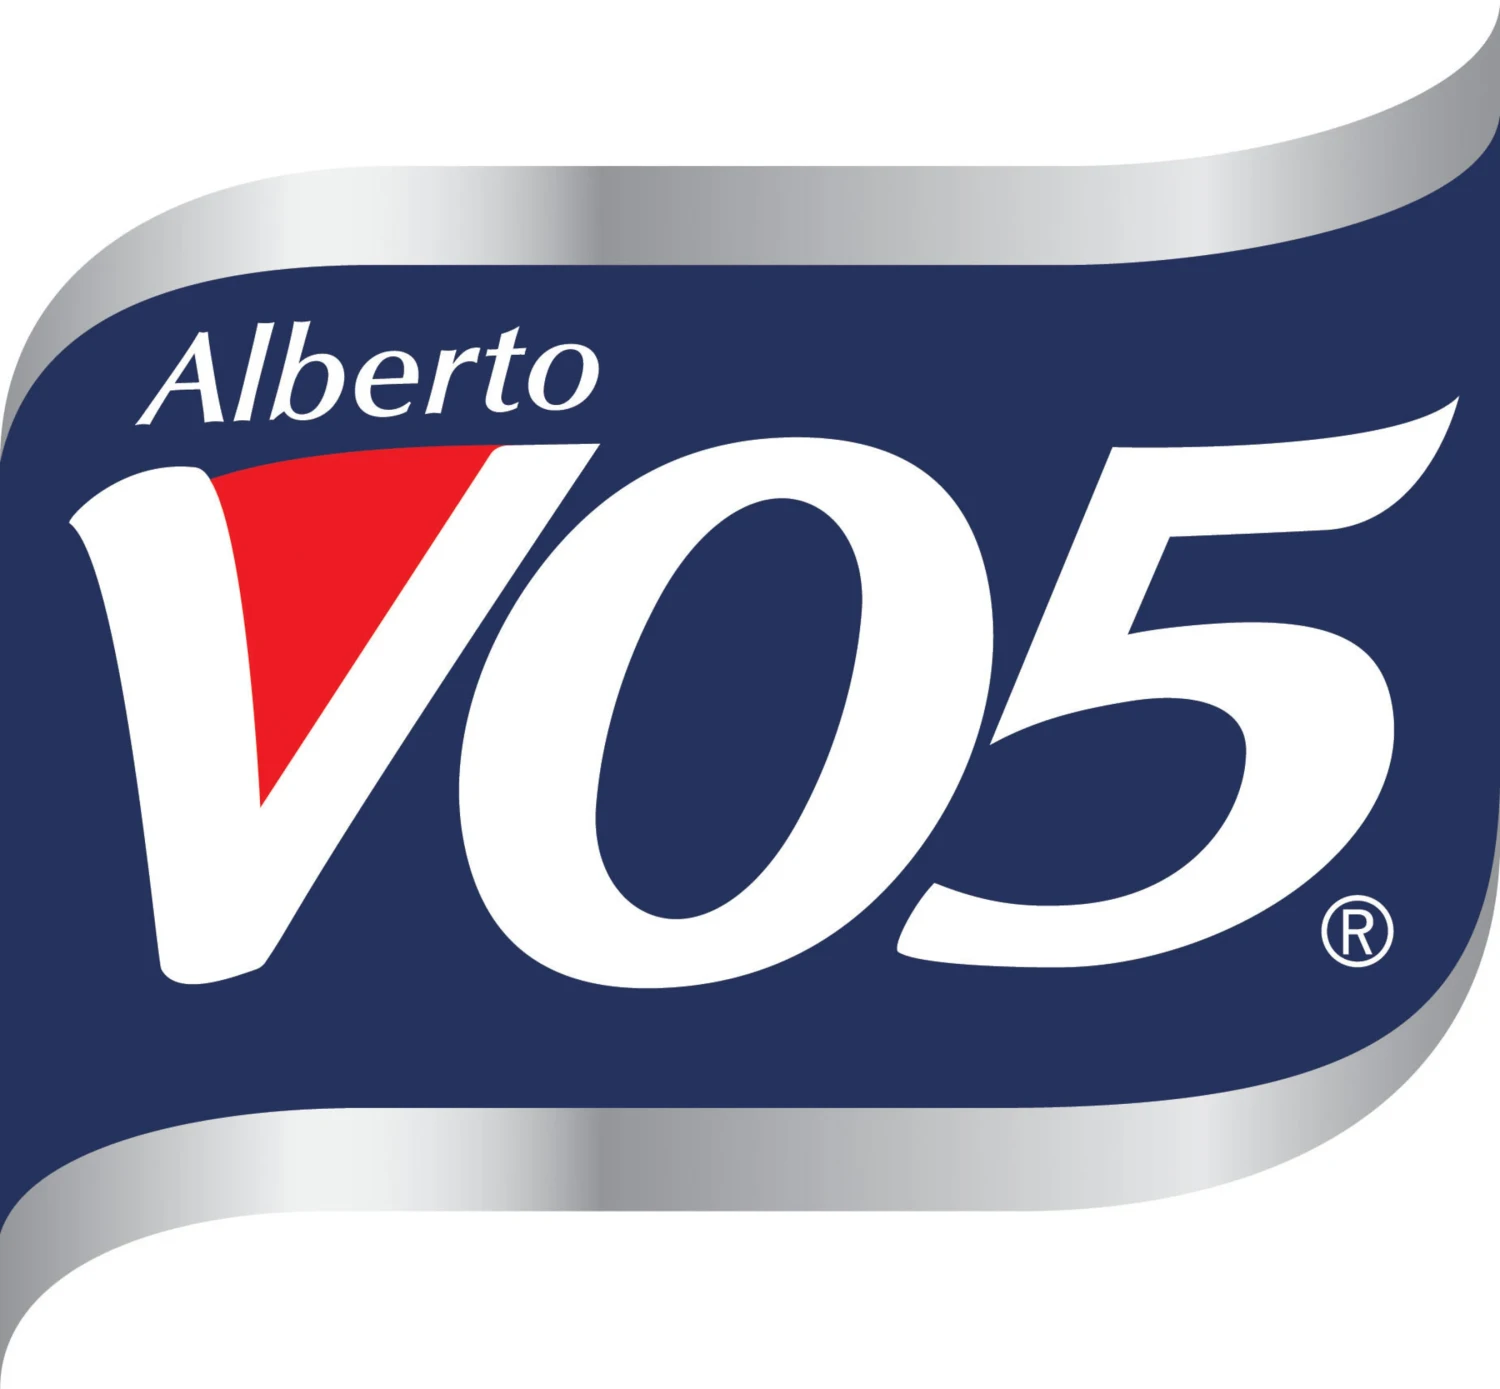 VO5